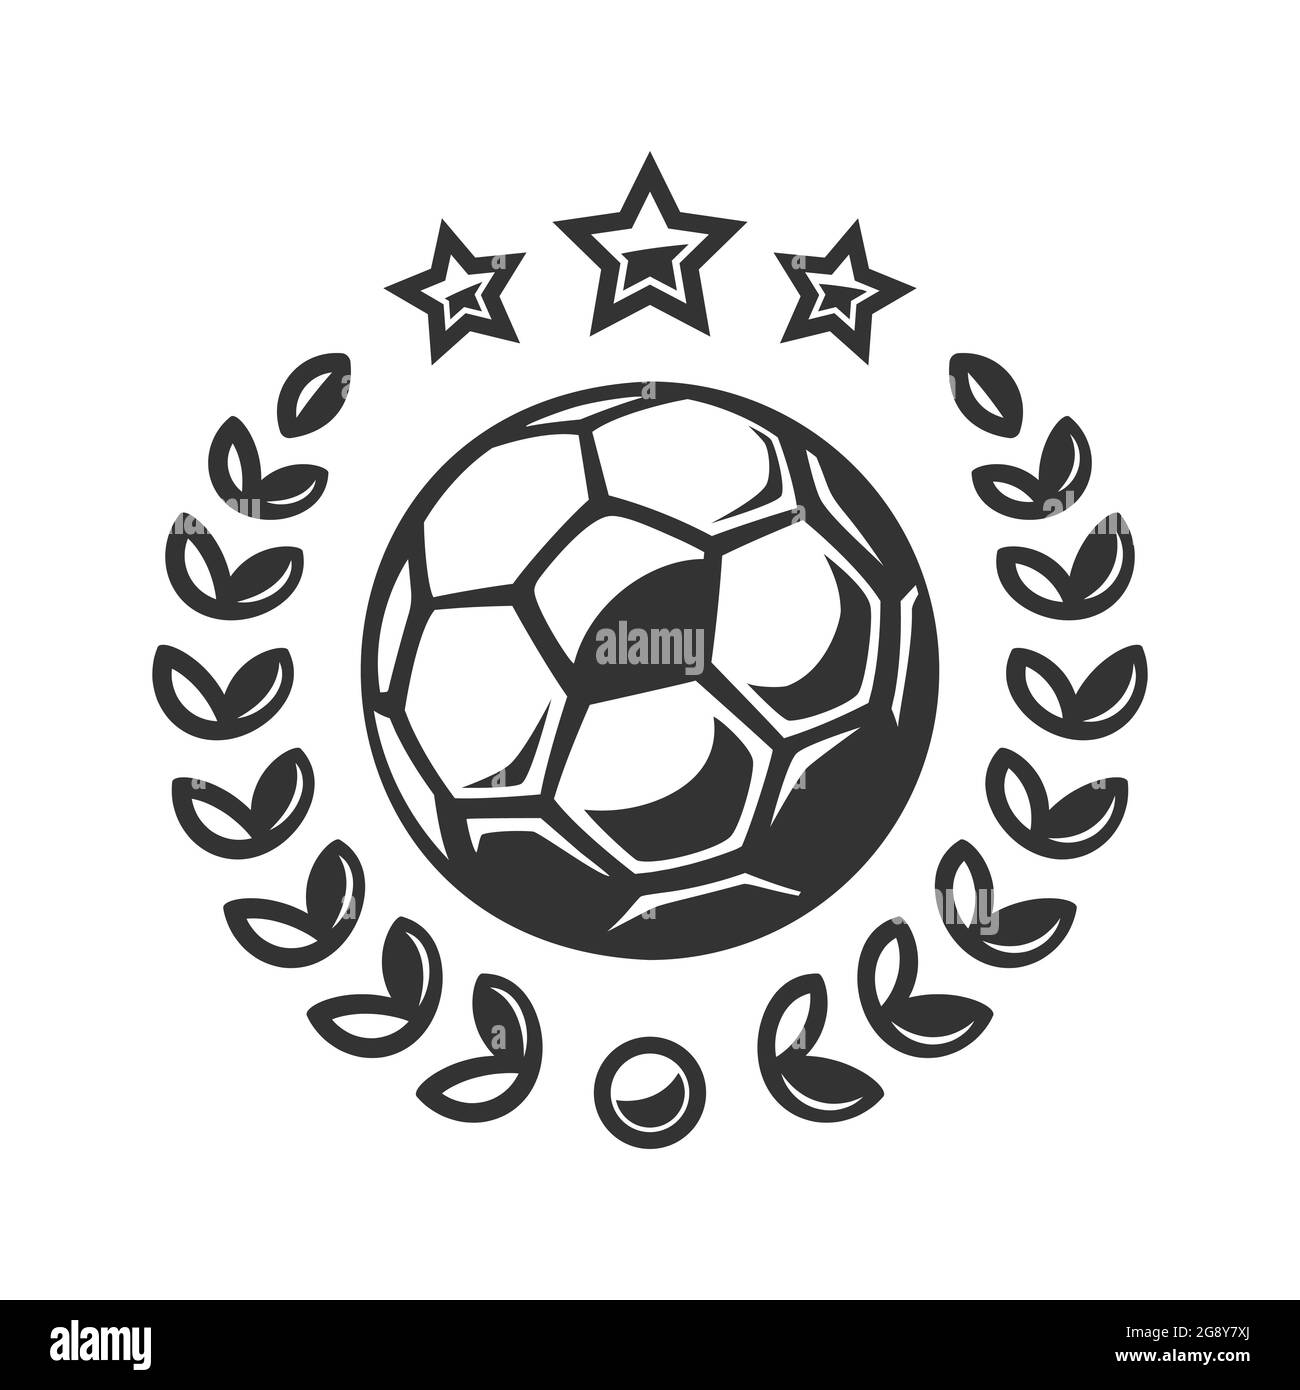 Details 144+ football tournament logo - camera.edu.vn